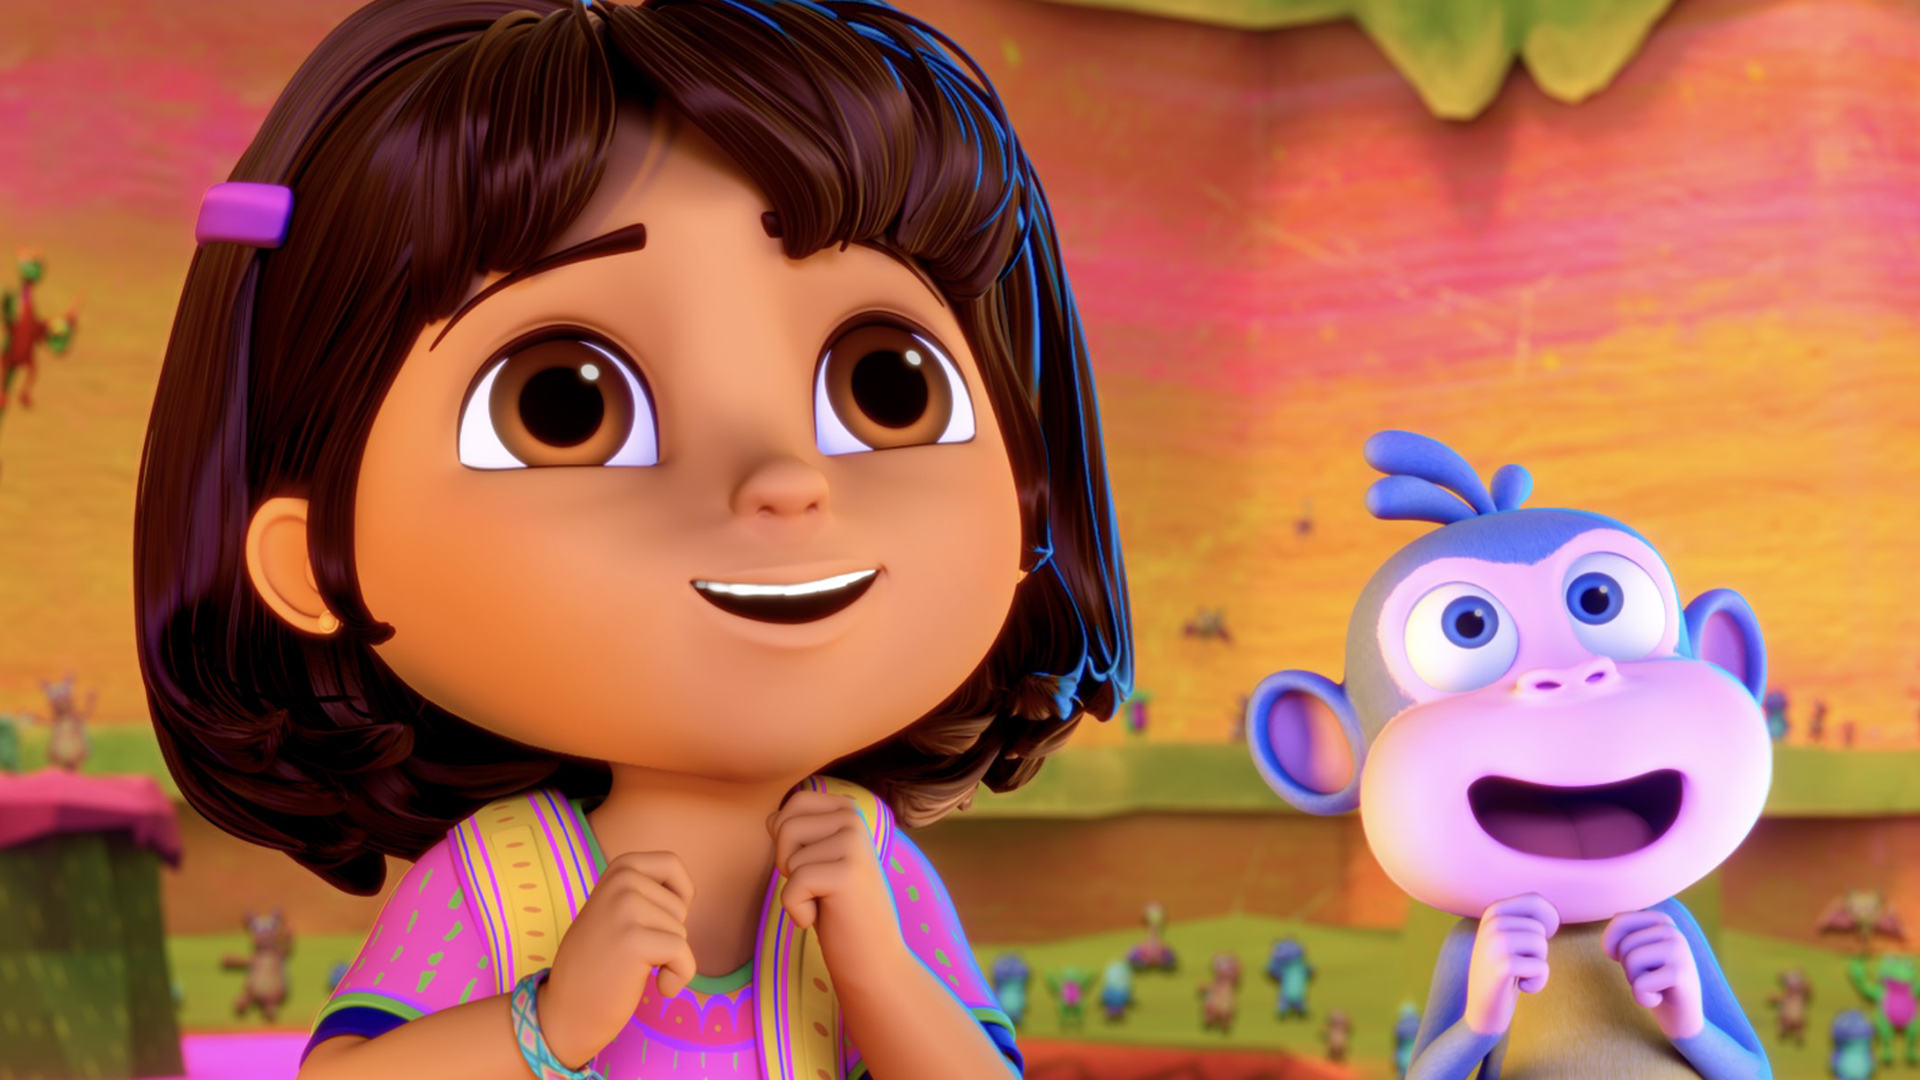 Dora the Explorer - Where to Watch and Stream - TV Guide